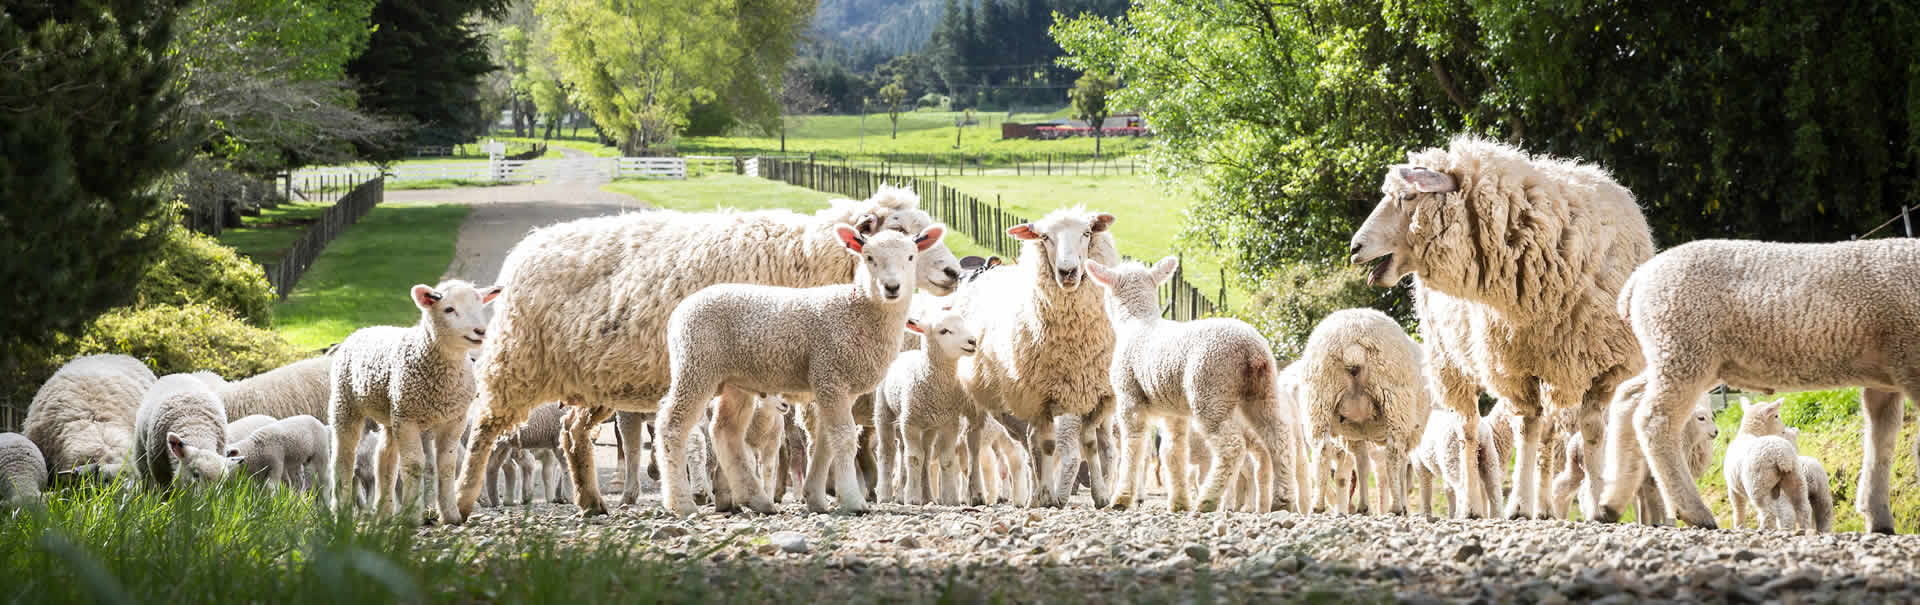 Sheep farm New Zealand